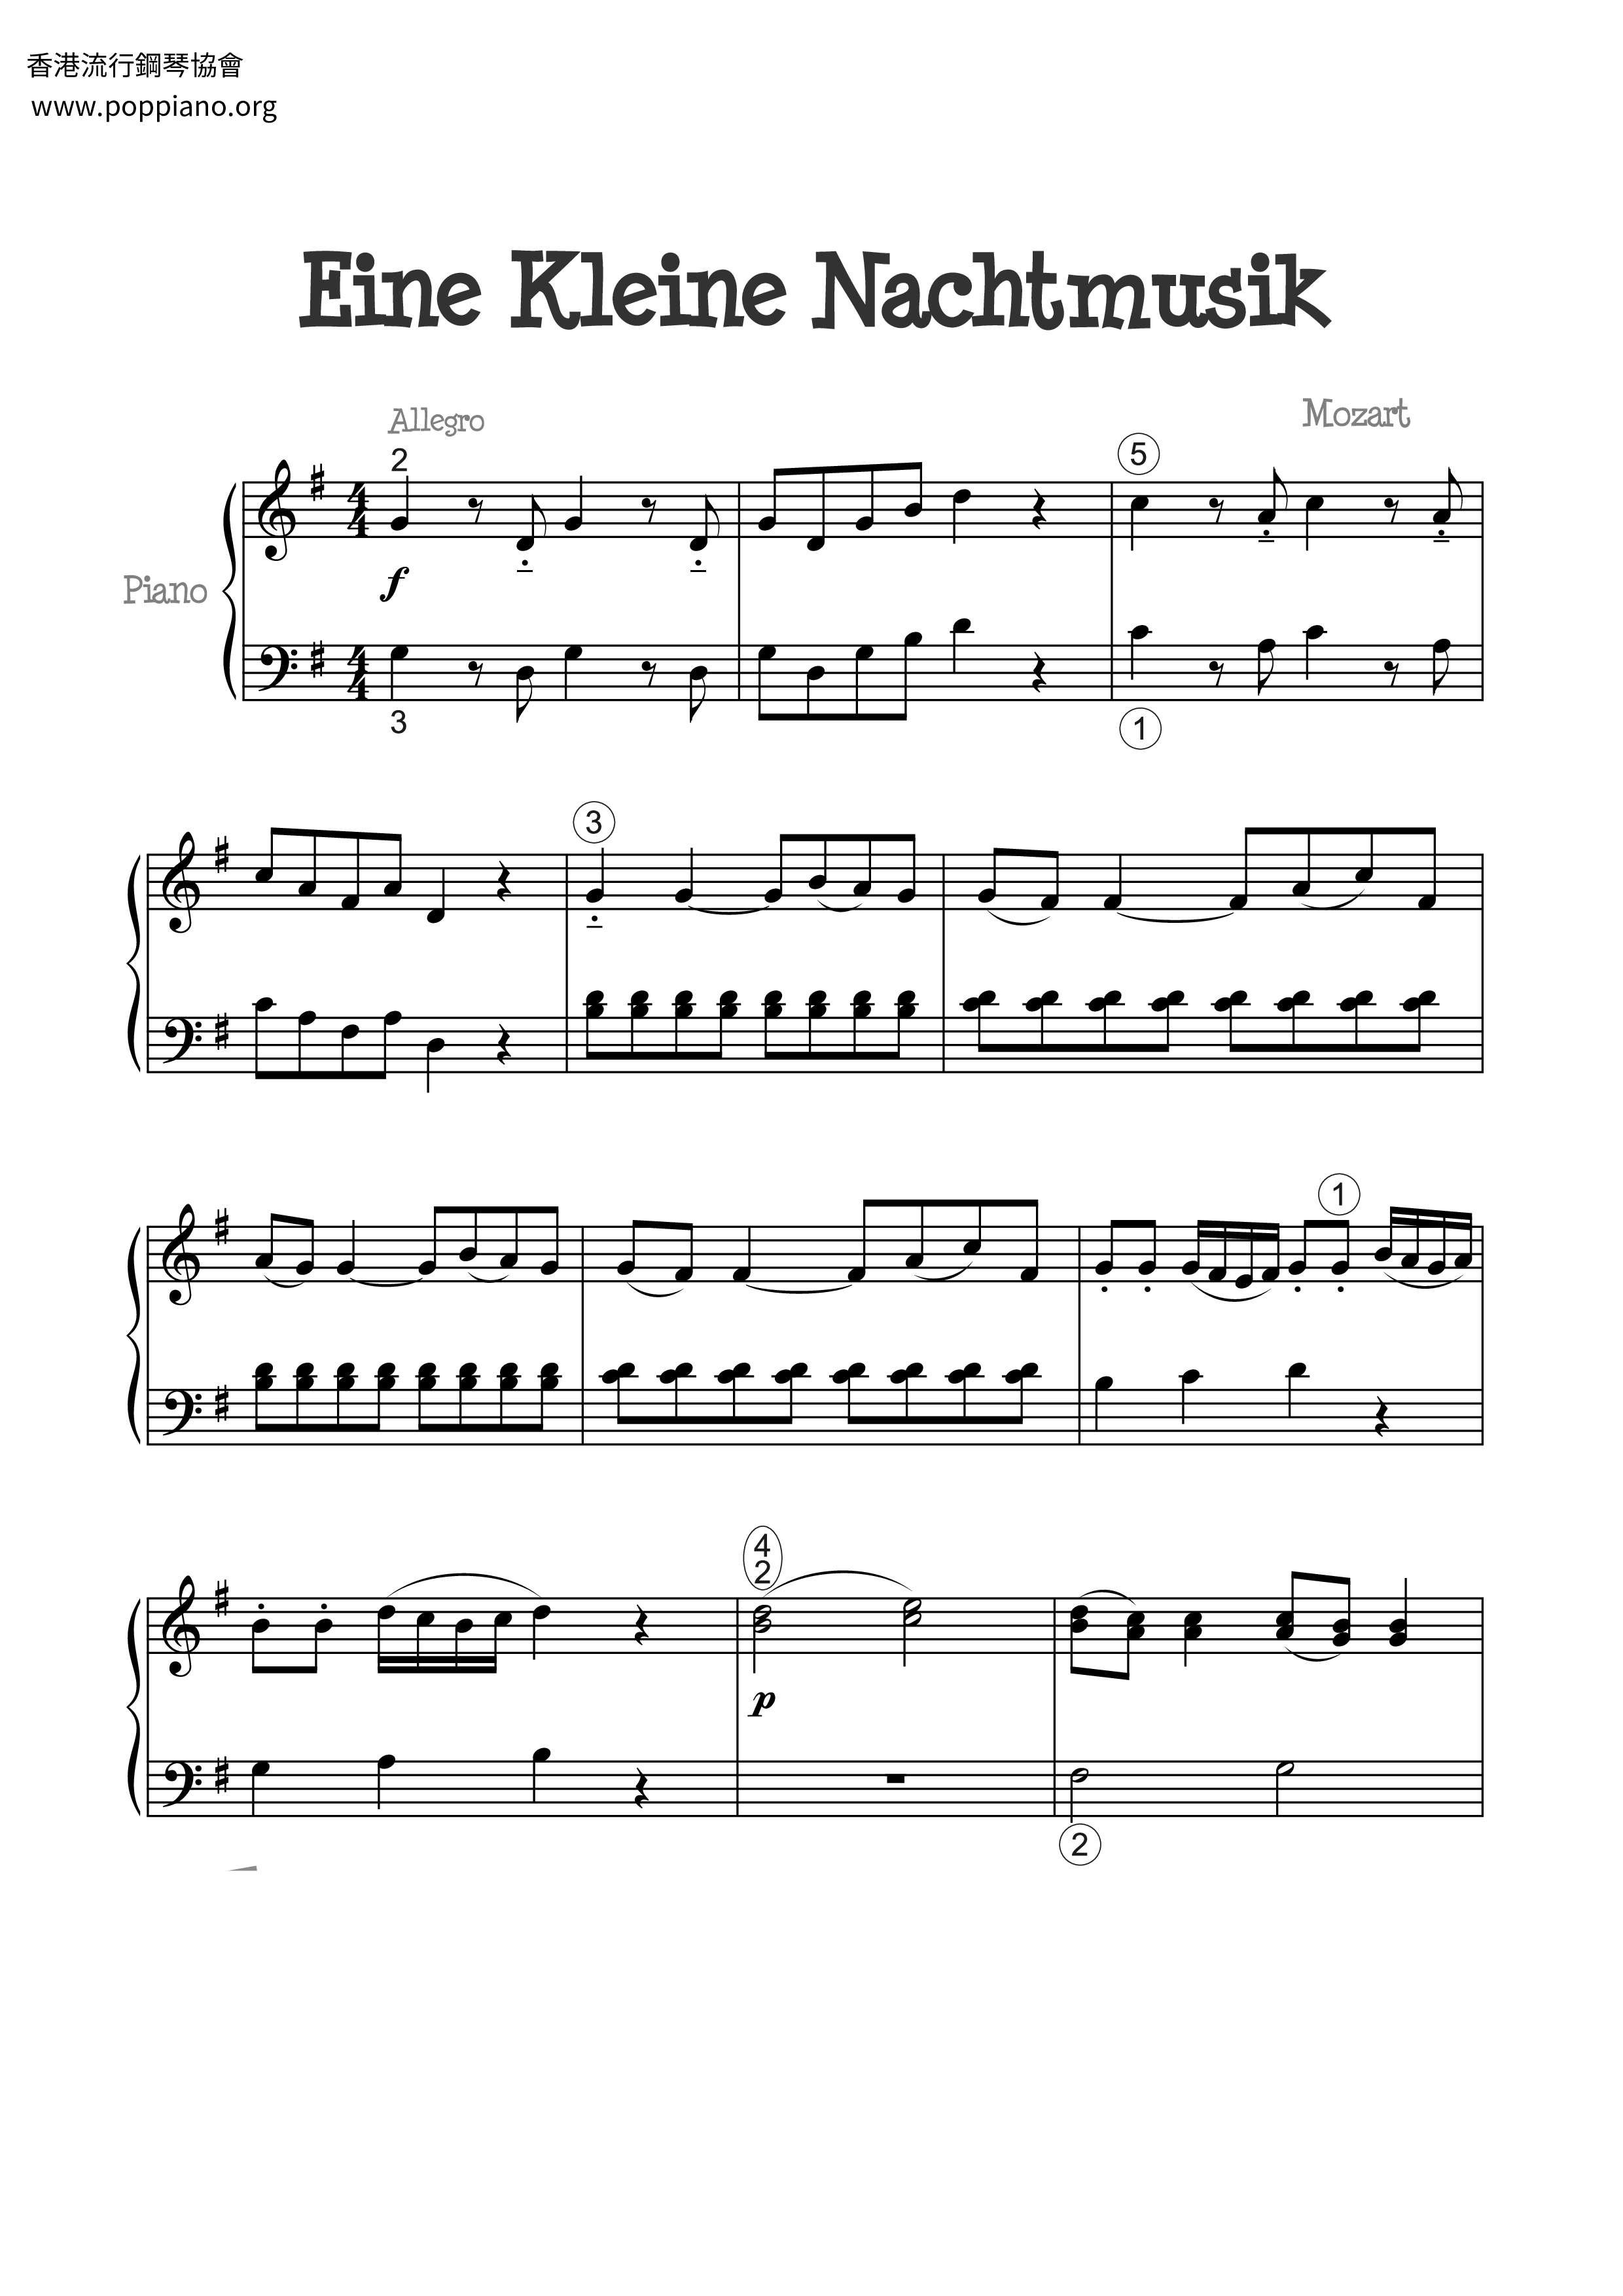 Serenade No. 13 in G Major, K. 525, Eine kleine Nachtmusik: I. Allegro琴譜